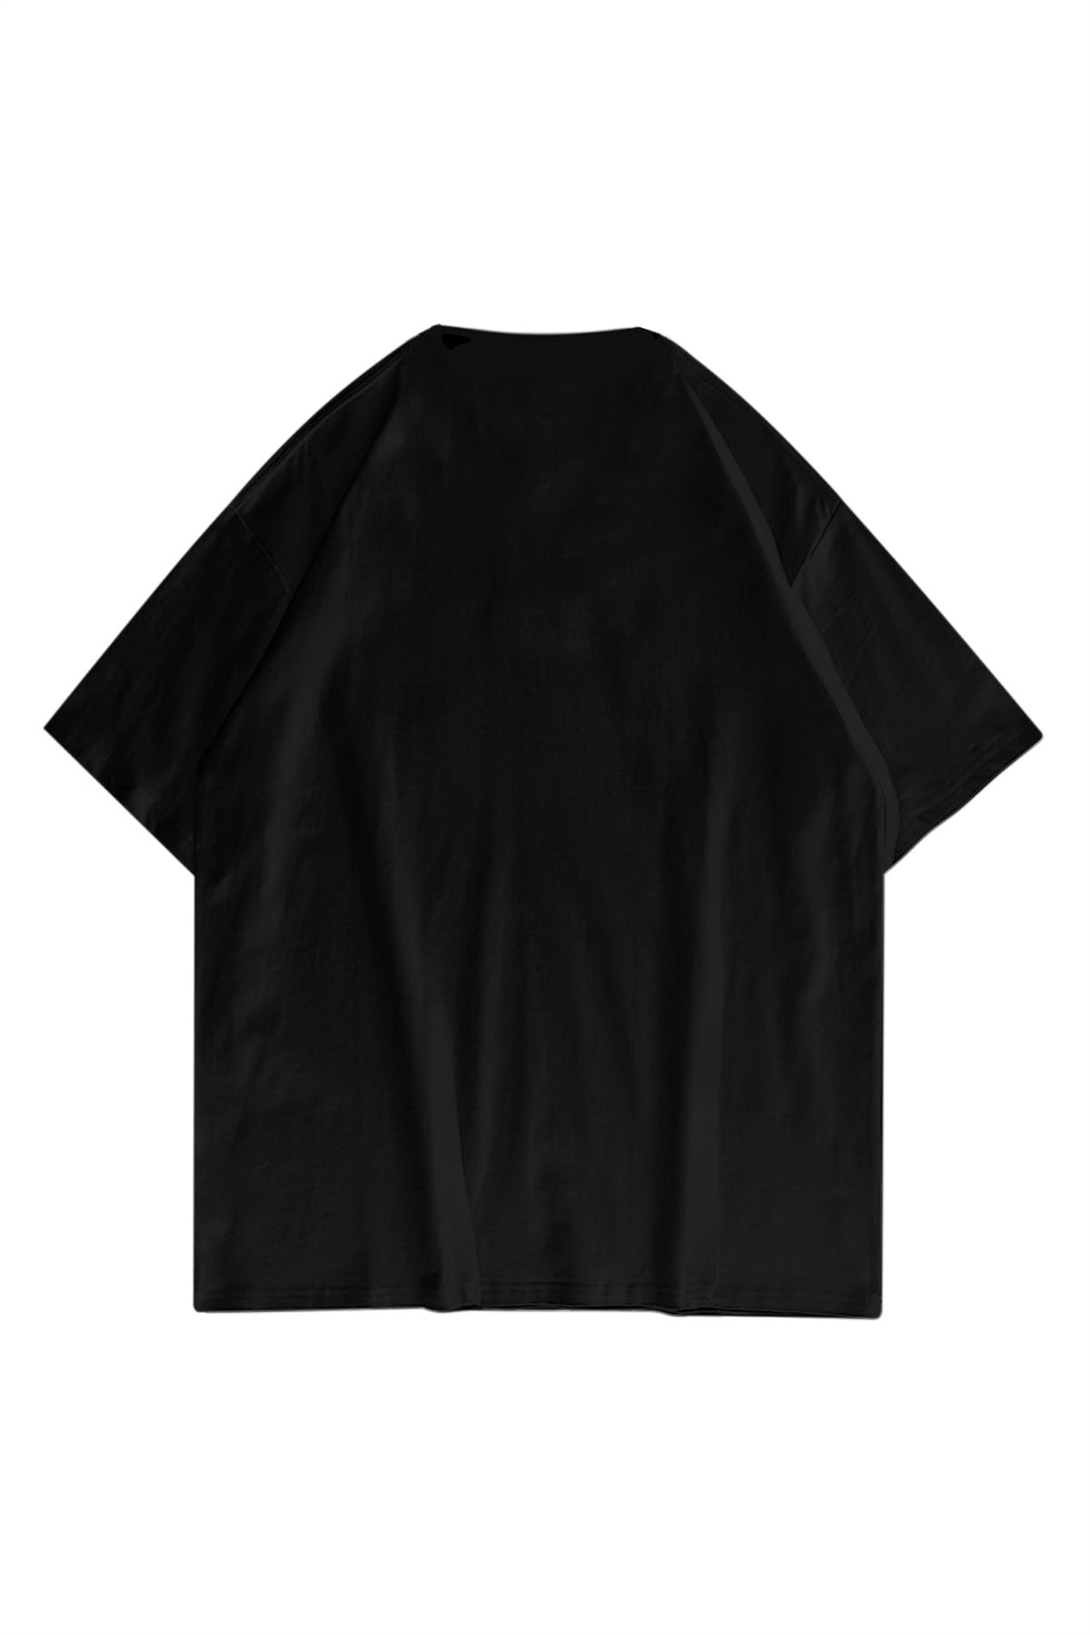 Trendiz Unisex Kalp Siyah Tshirt